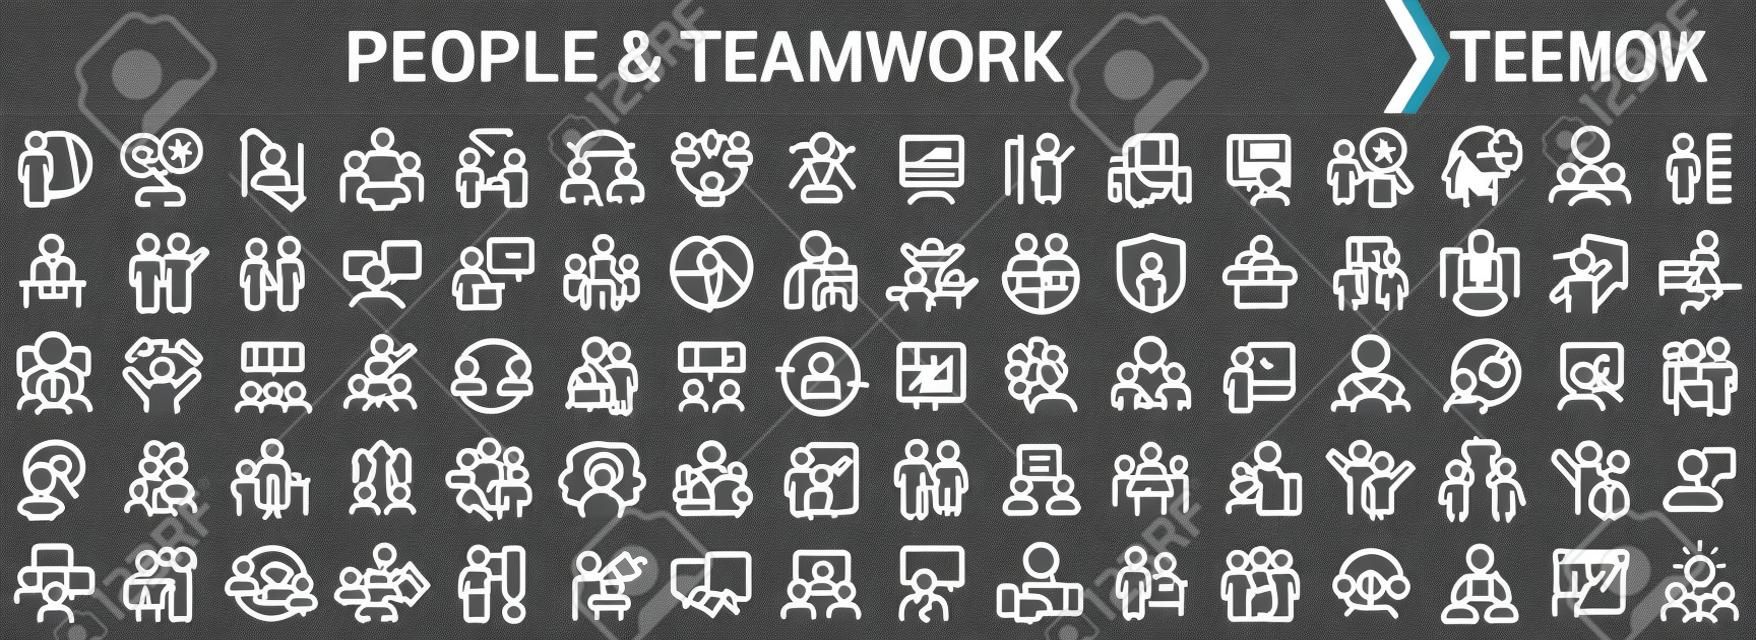 Menschen und teamwork lineare symbole in schwarz. große ui-ikonensammlung in einem flachen design. packung mit dünnen umrissschildern. große reihe von symbolen für das design